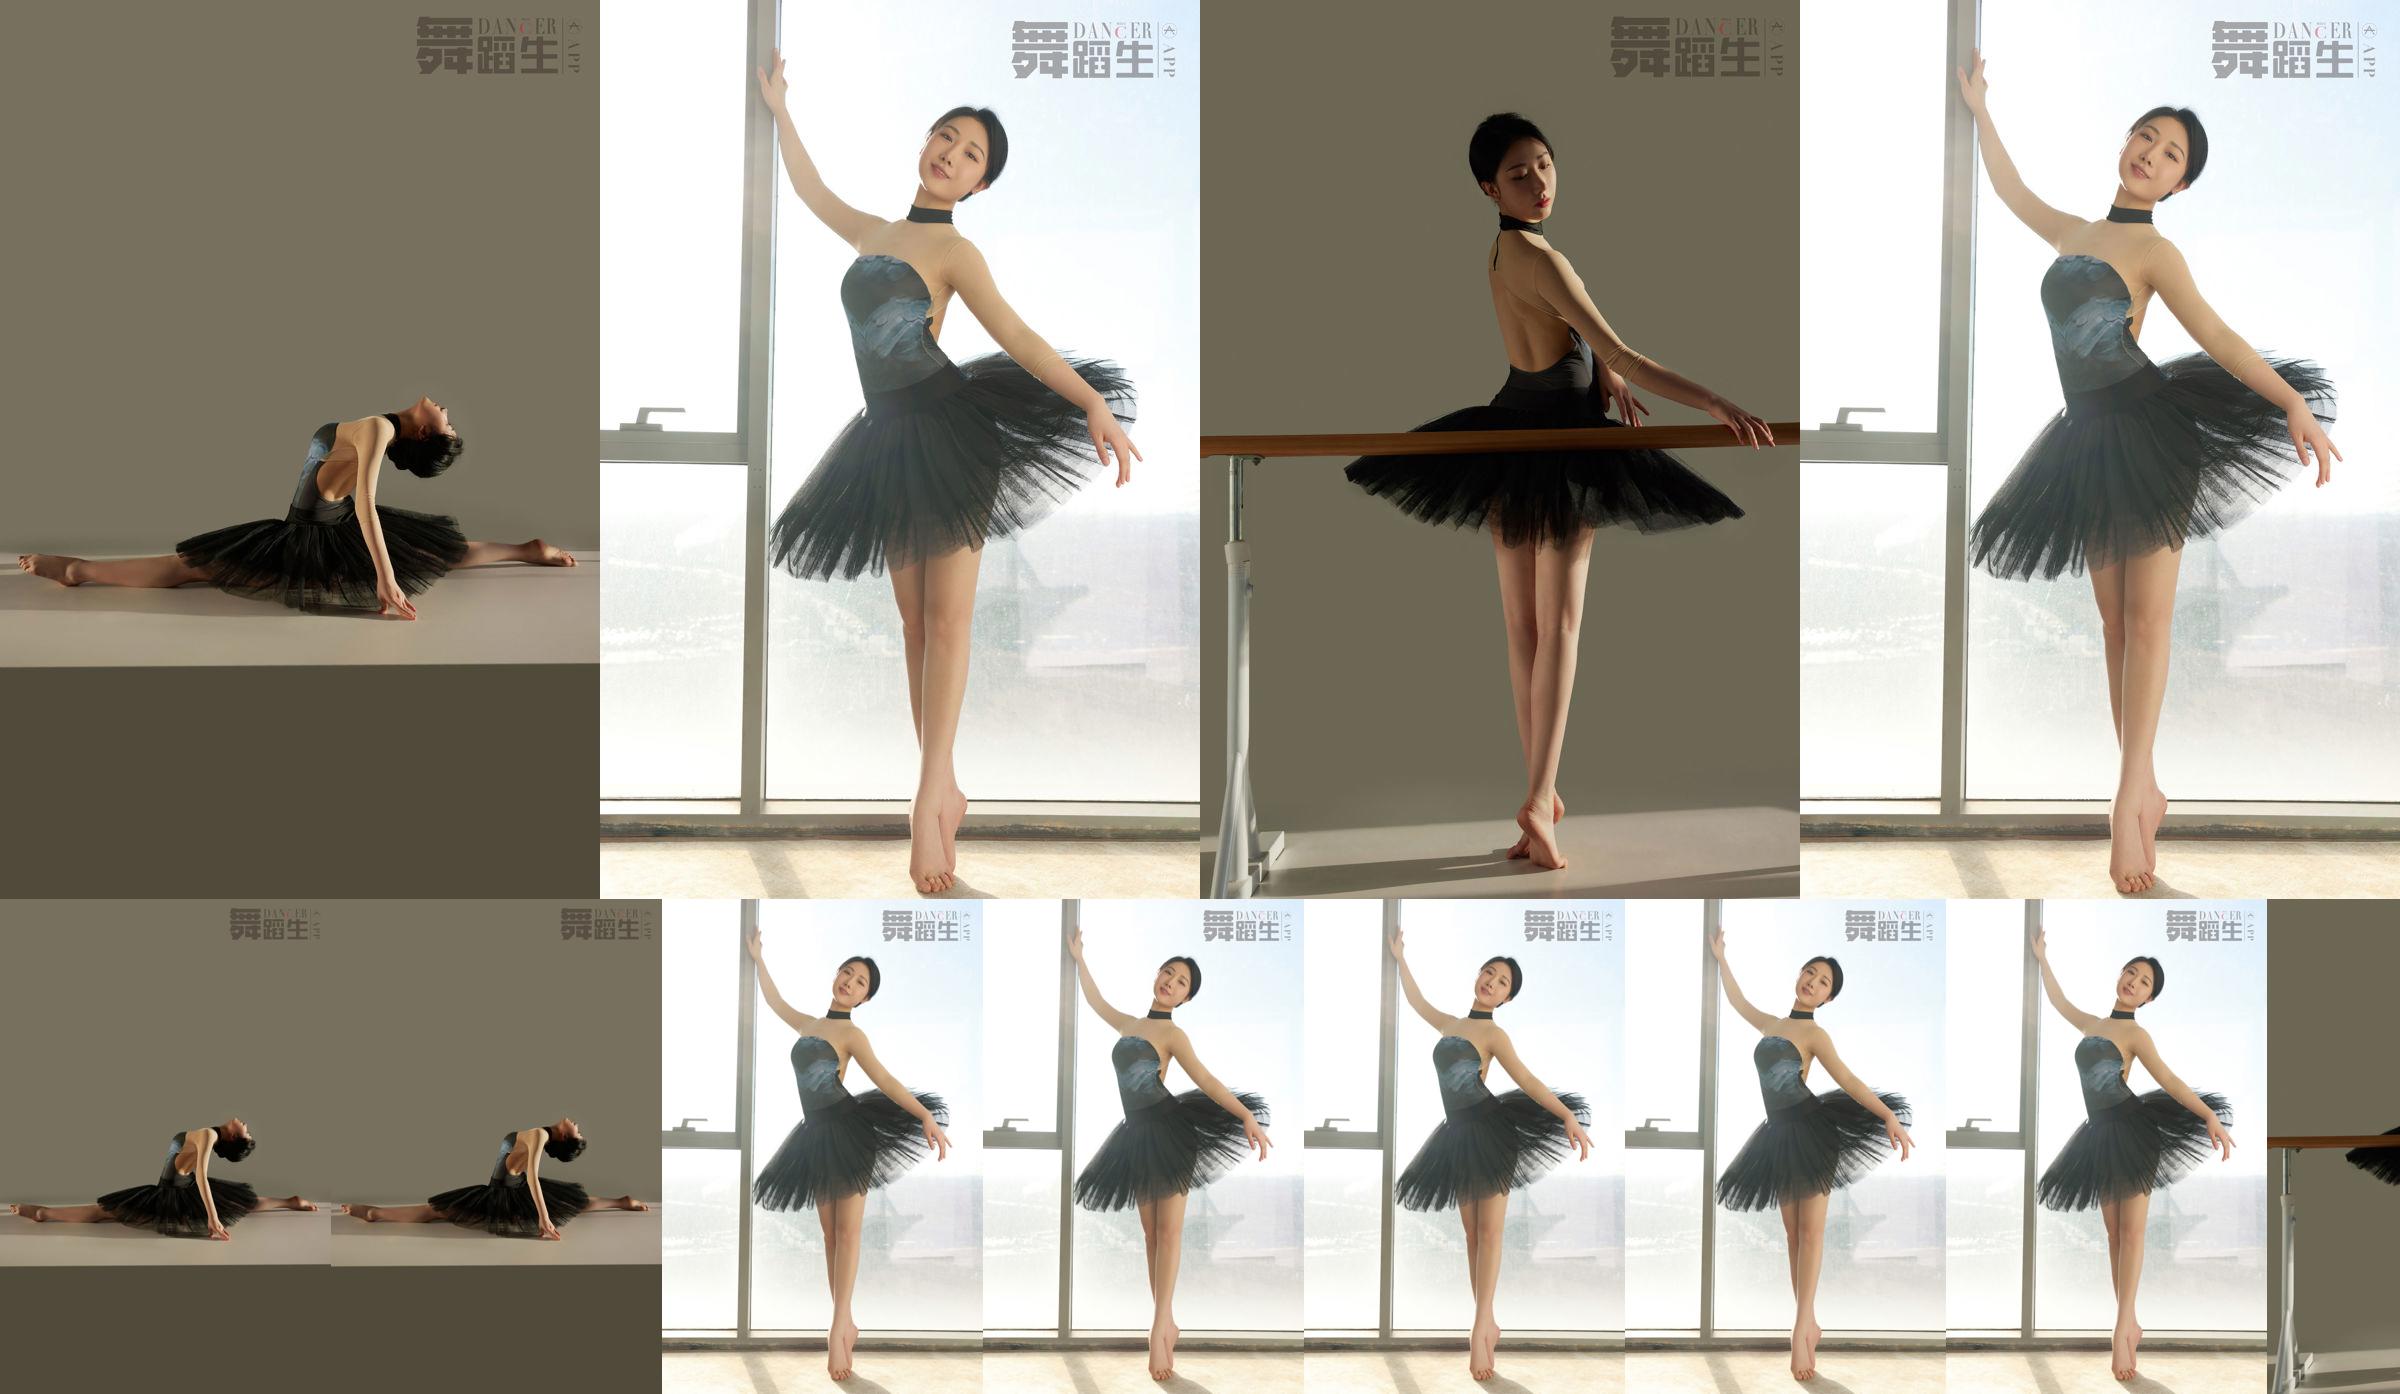 [Carrie Galli] Diário de uma estudante de dança 088 Xue Hui No.a5c7c8 Página 1